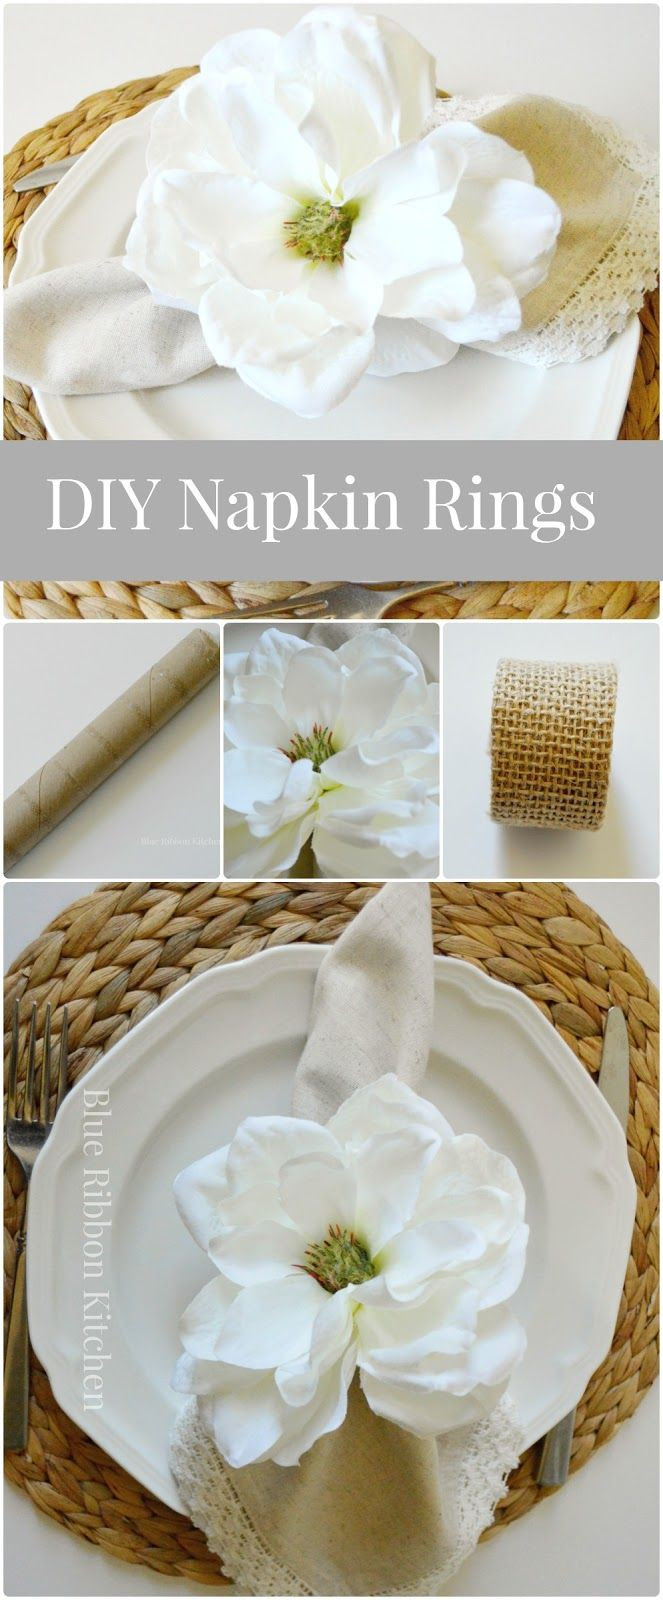 DIY Napkin Rings For Wedding
 The 25 best Napkin rings ideas on Pinterest